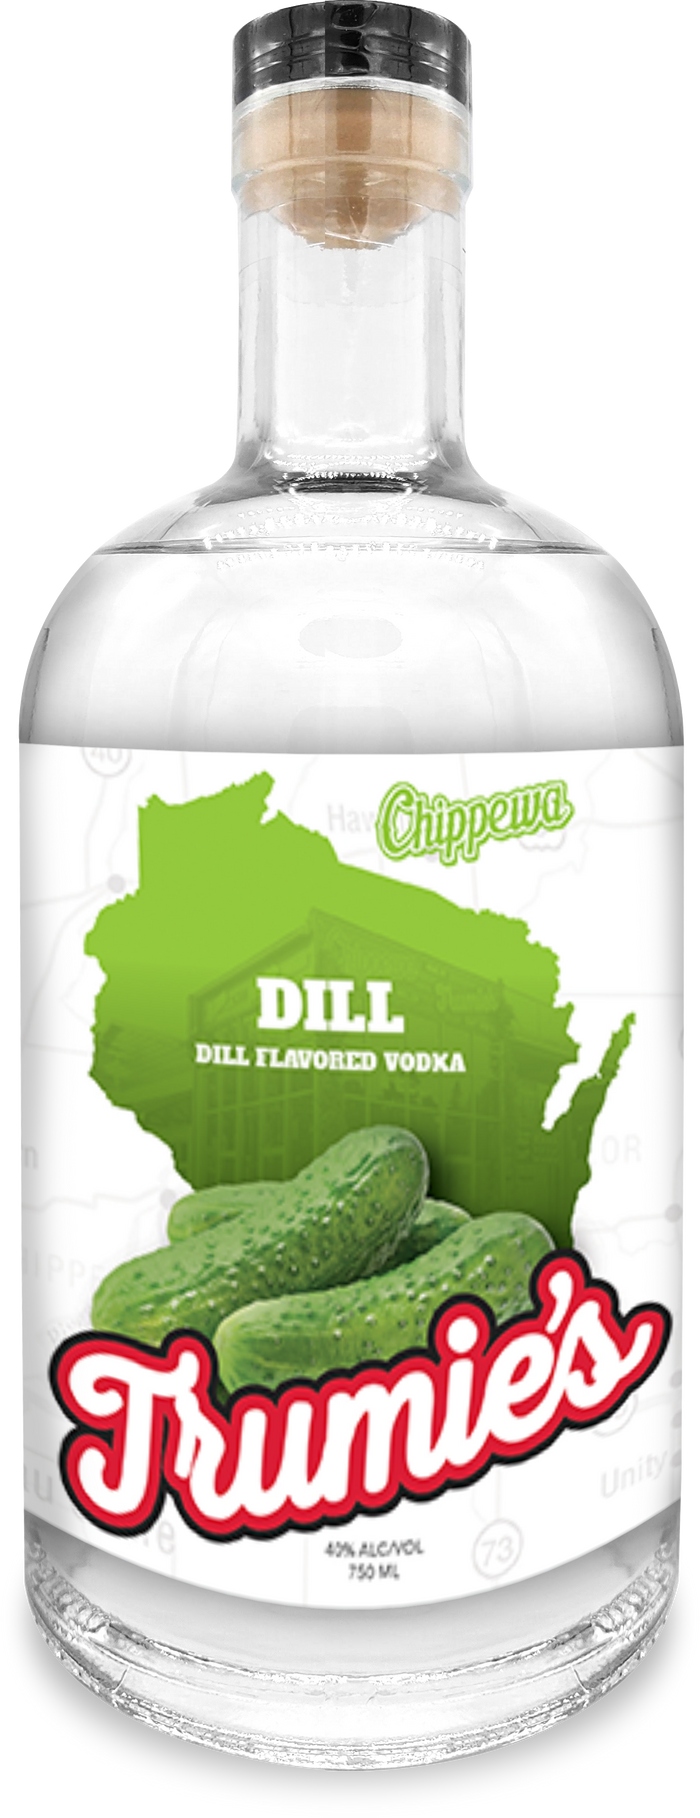 Chippewa Trumies Dill Vodka